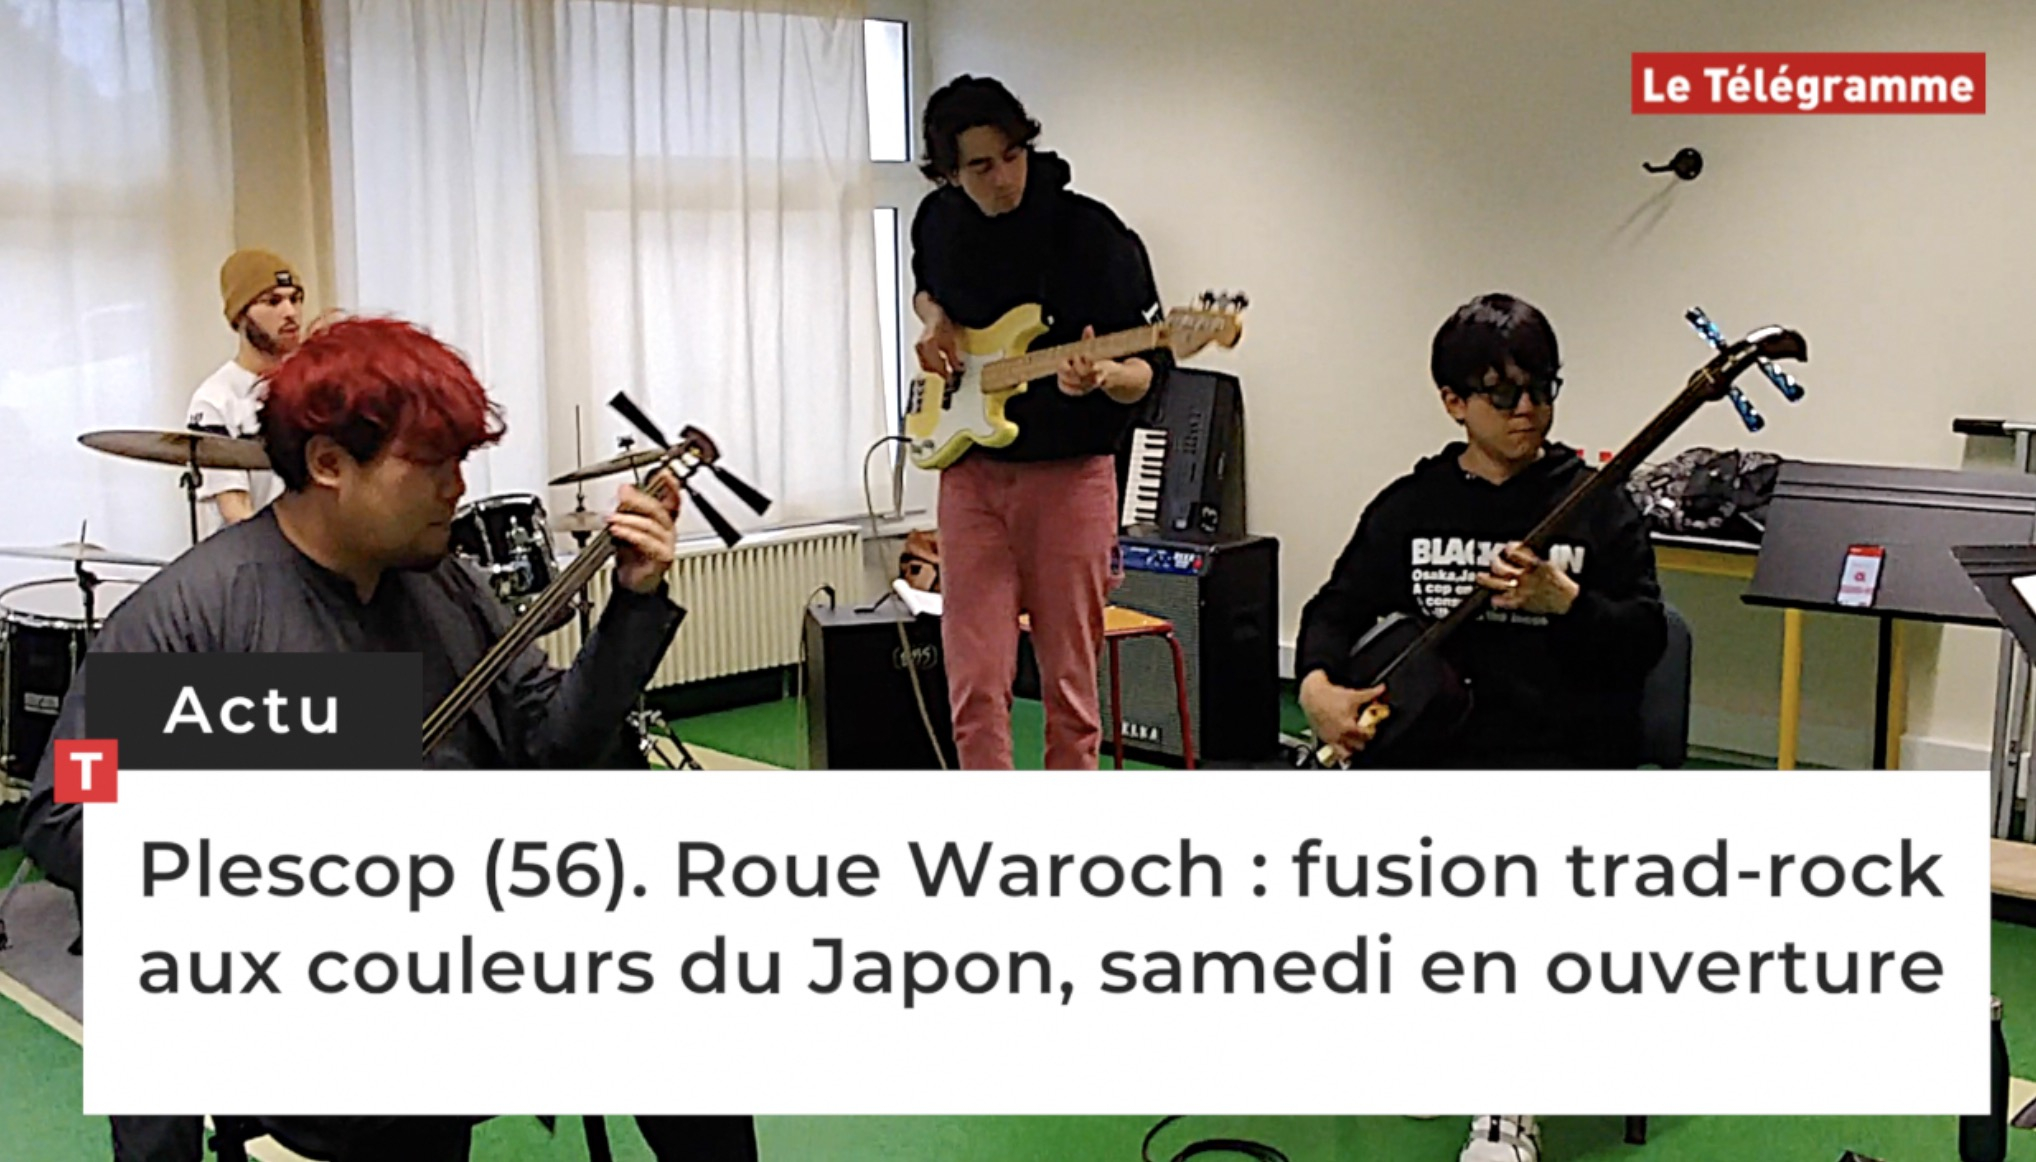 Plescop (56). Roue Waroch : fusion trad-rock aux couleurs du Japon, samedi en ouverture (Le Télégramme)